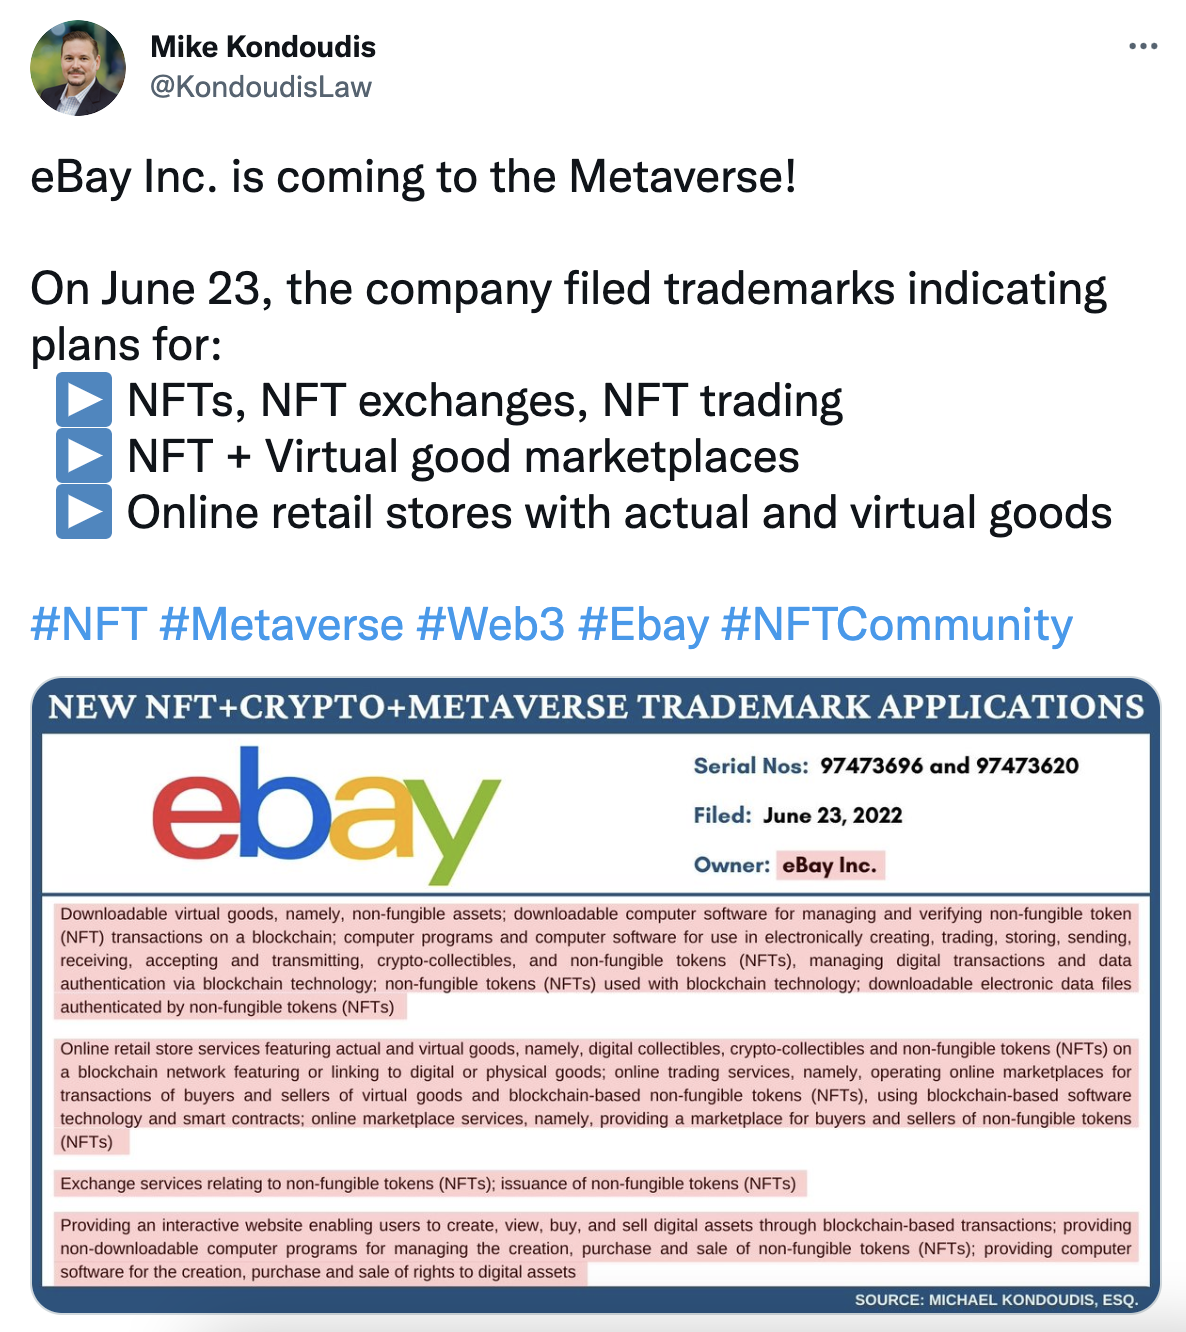 电商巨头 eBay 提交涉及 NFT、NFT 交易等的商标申请